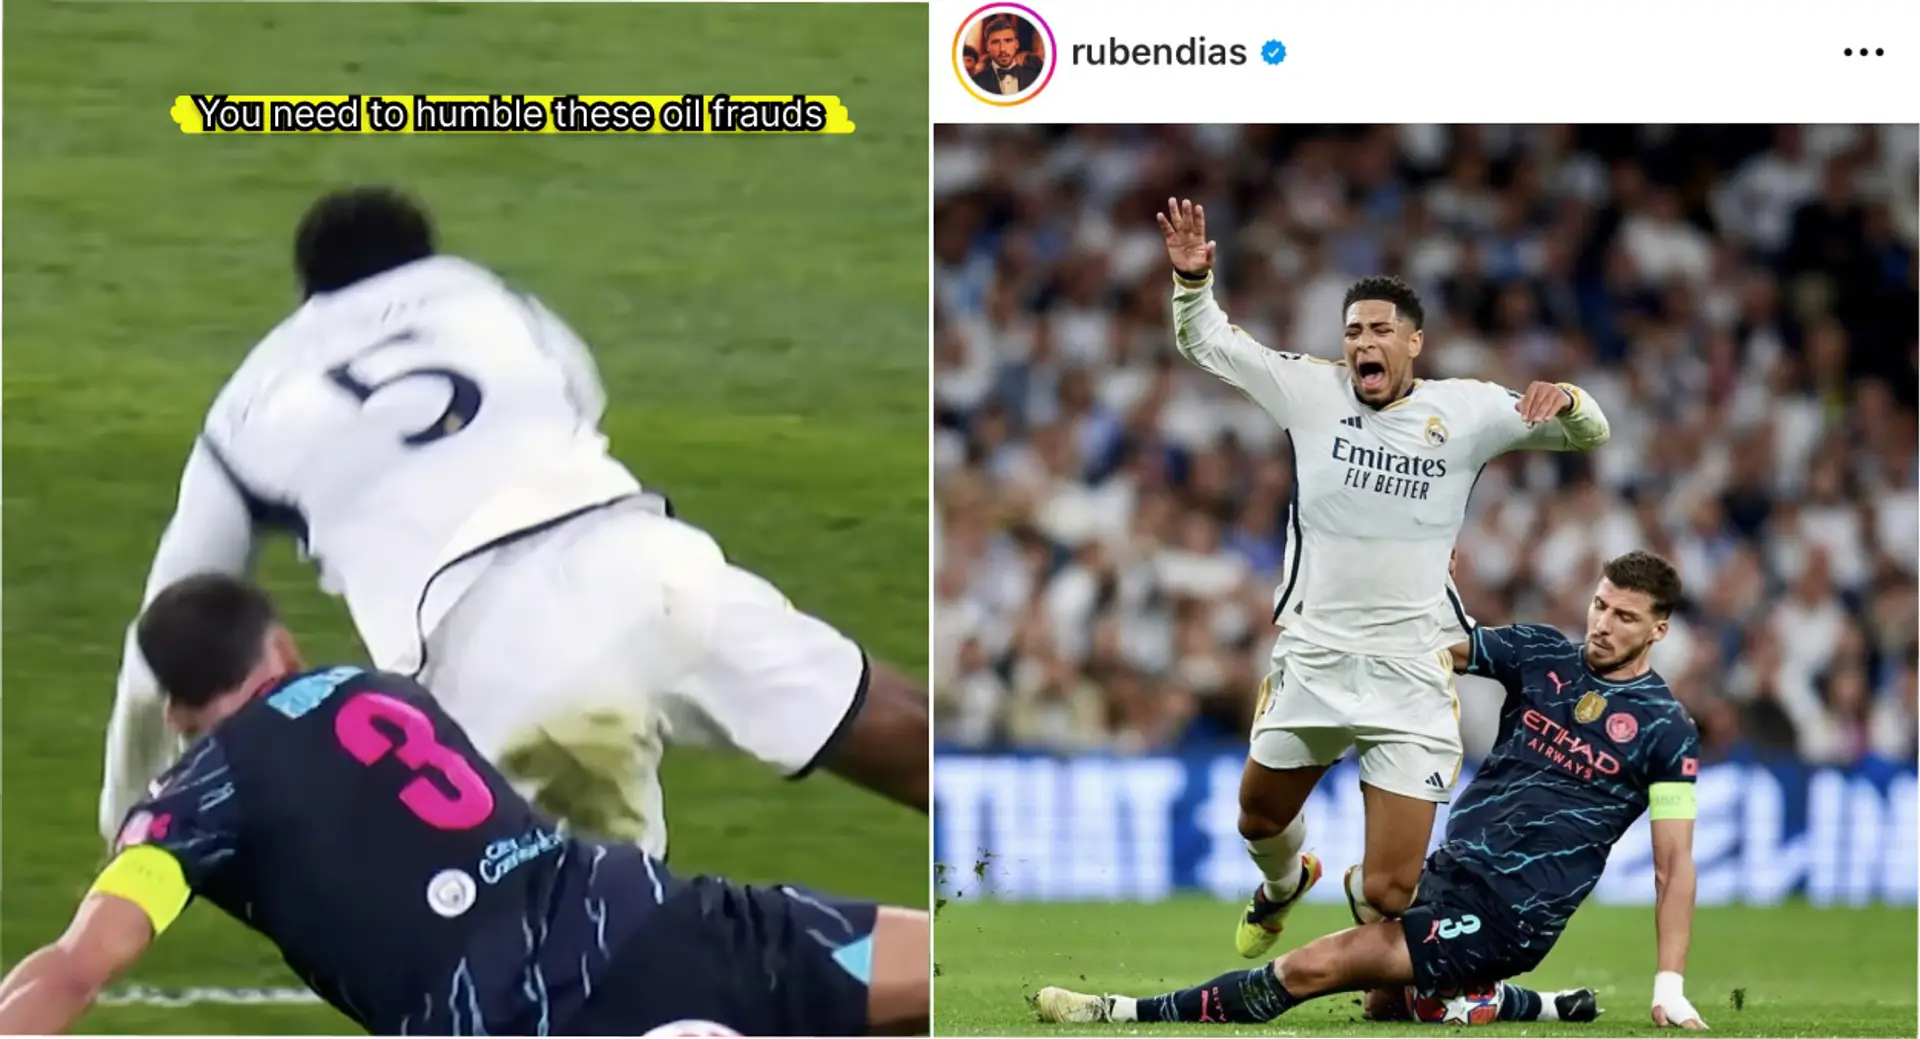 'Será mejor que no lo dejes pasar': los fans del Real Madrid quieren venganza después de que Ruben Dias se burla de Bellingham 